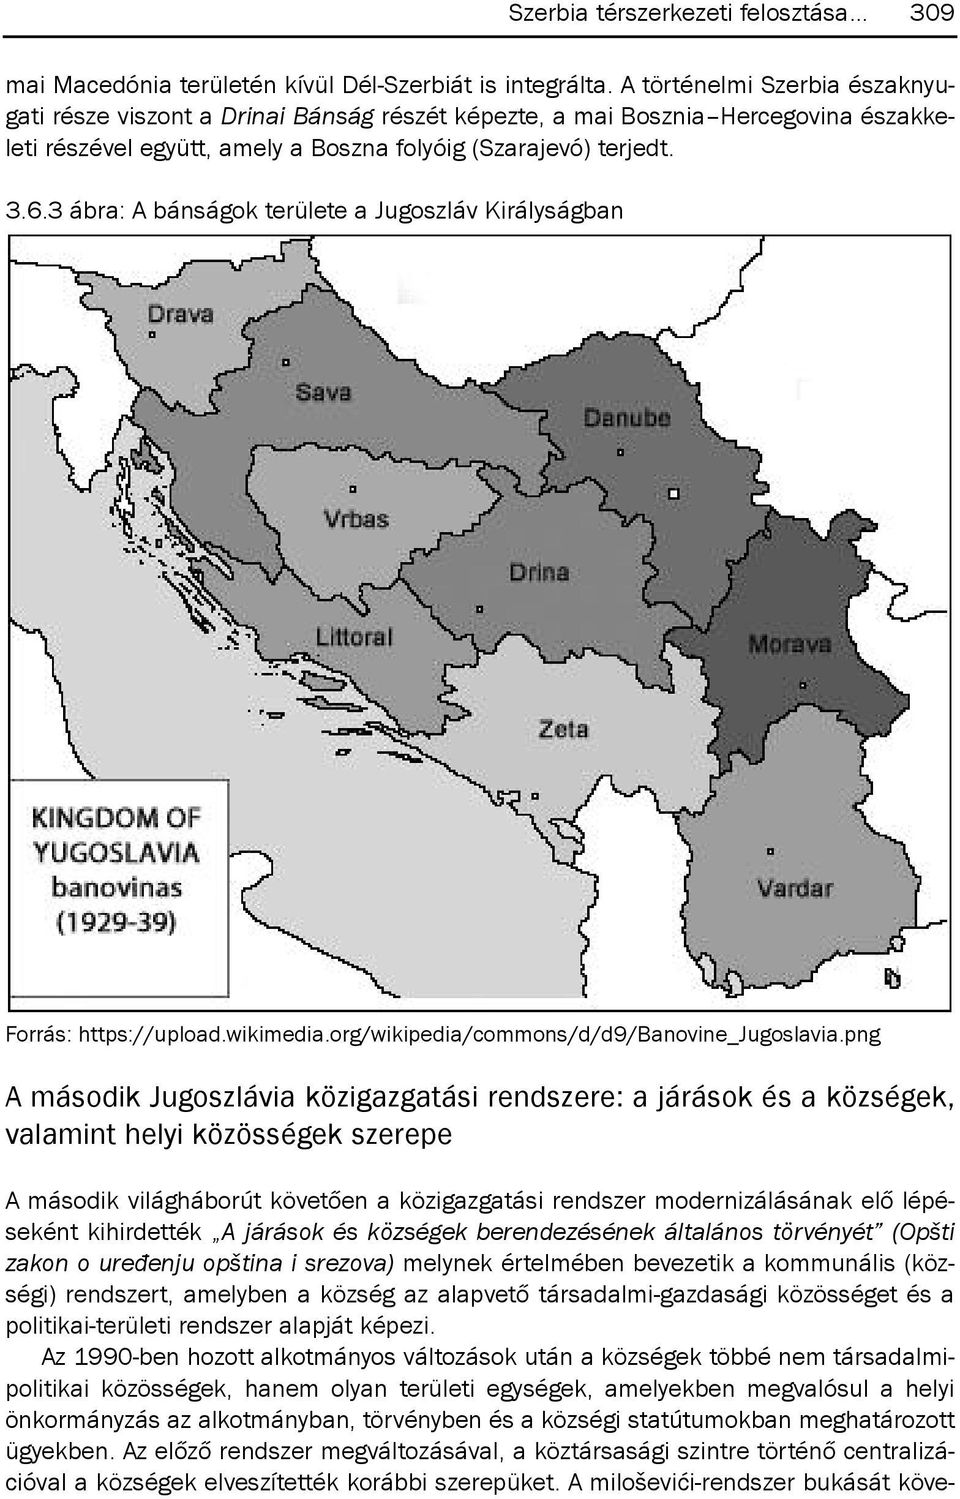 3 ábra: A bánságok területe a jugoszláv királyságban forrás: https://upload.wikimedia.org/wikipedia/commons/d/d9/banovine_jugoslavia.